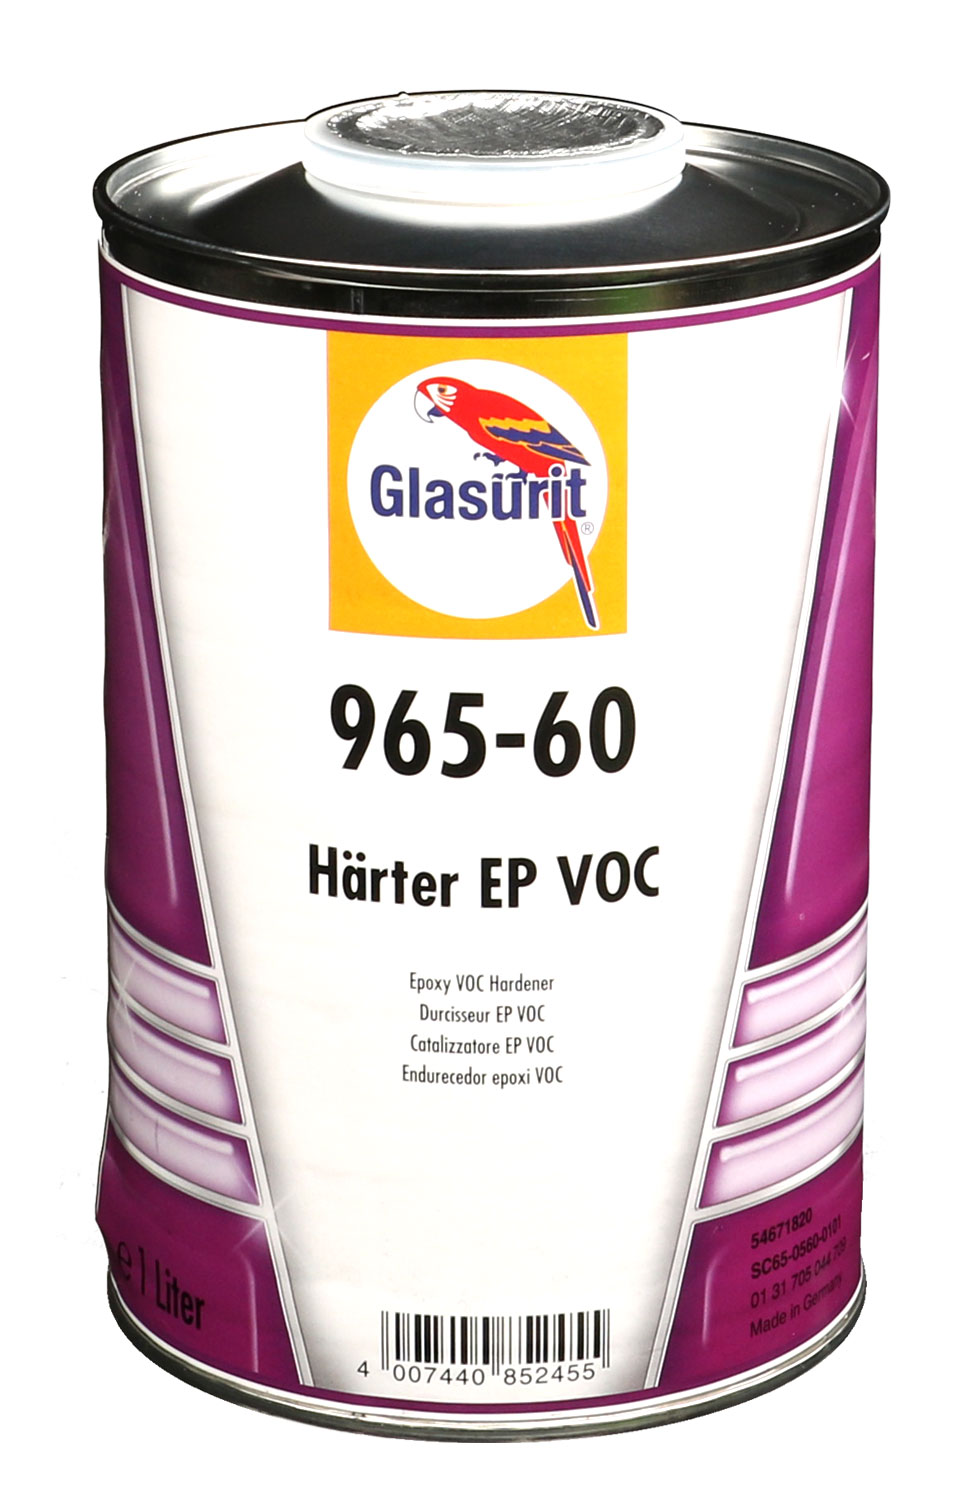 Glasurit VOC Härter EP 965-60